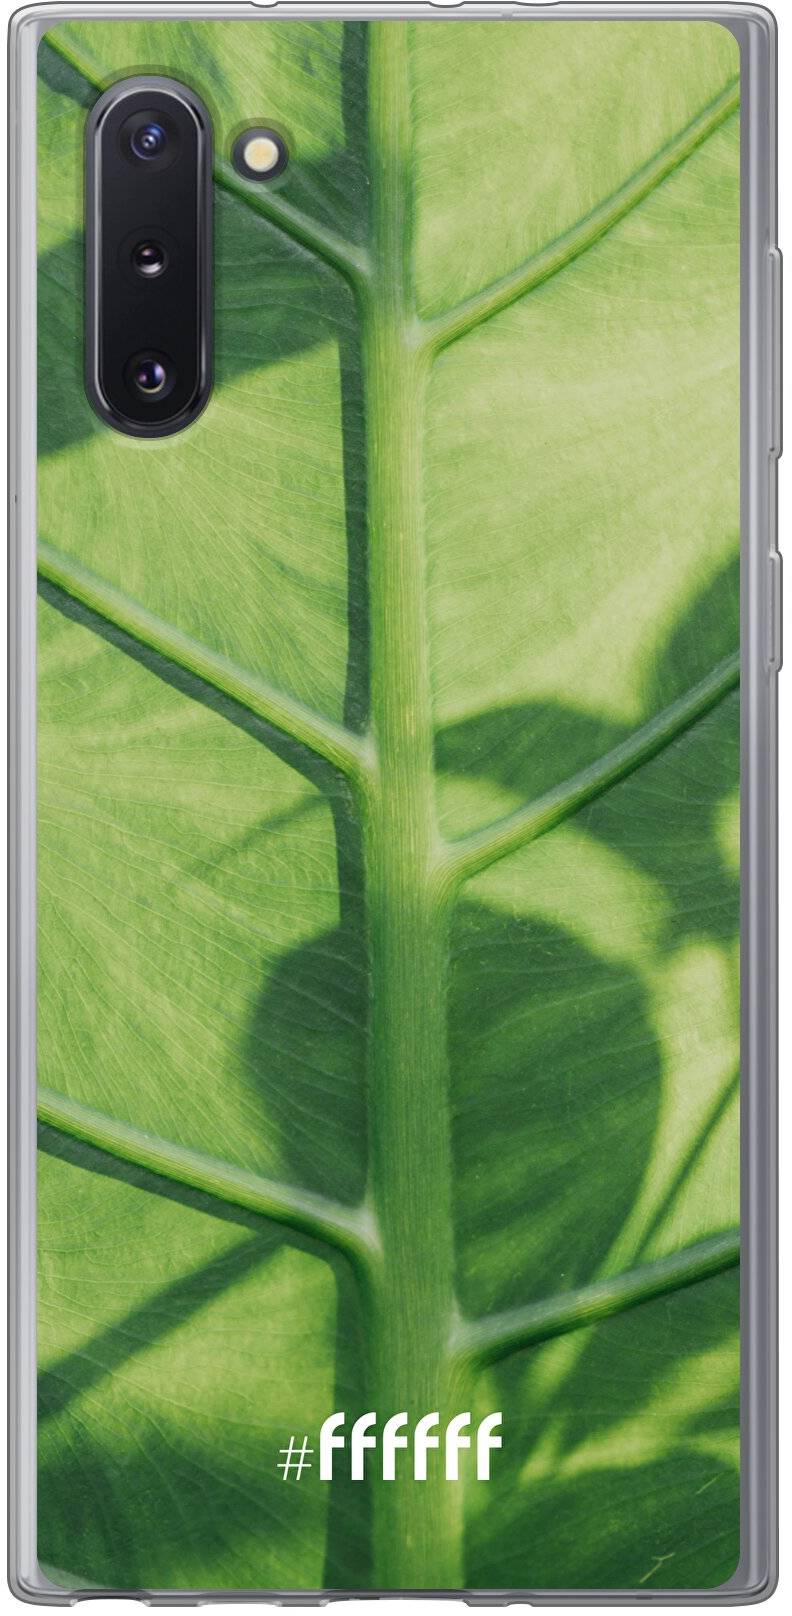 Leaves Macro Galaxy Note 10